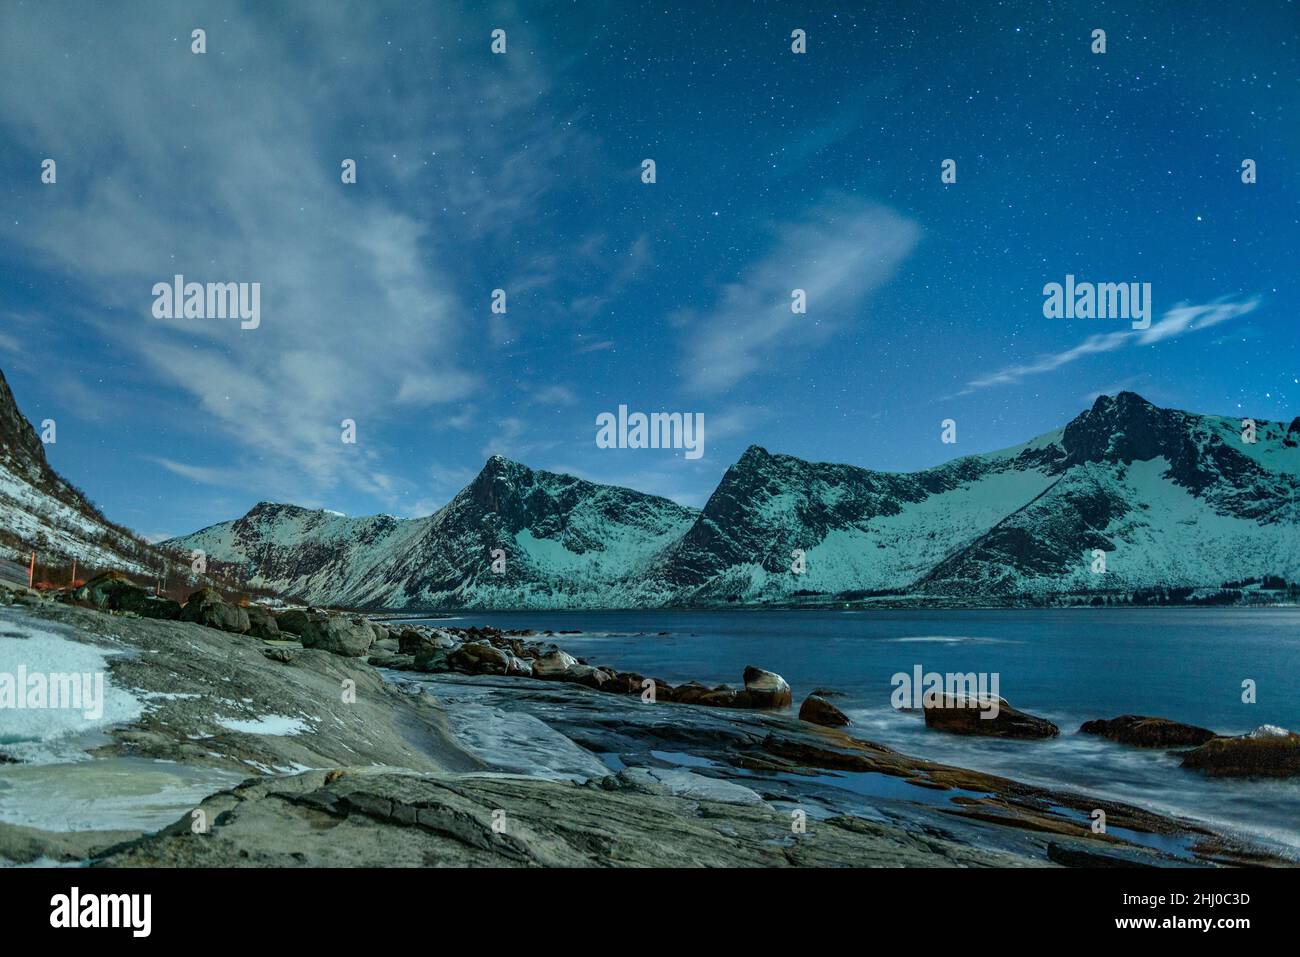 Montagne del fiordo di Ersfjord (isola di Senja) in una fredda notte invernale con l'aurora boreale (Senja, Norvegia) ESP: Montañas del fiordo de Ersfjord, Senja Foto Stock